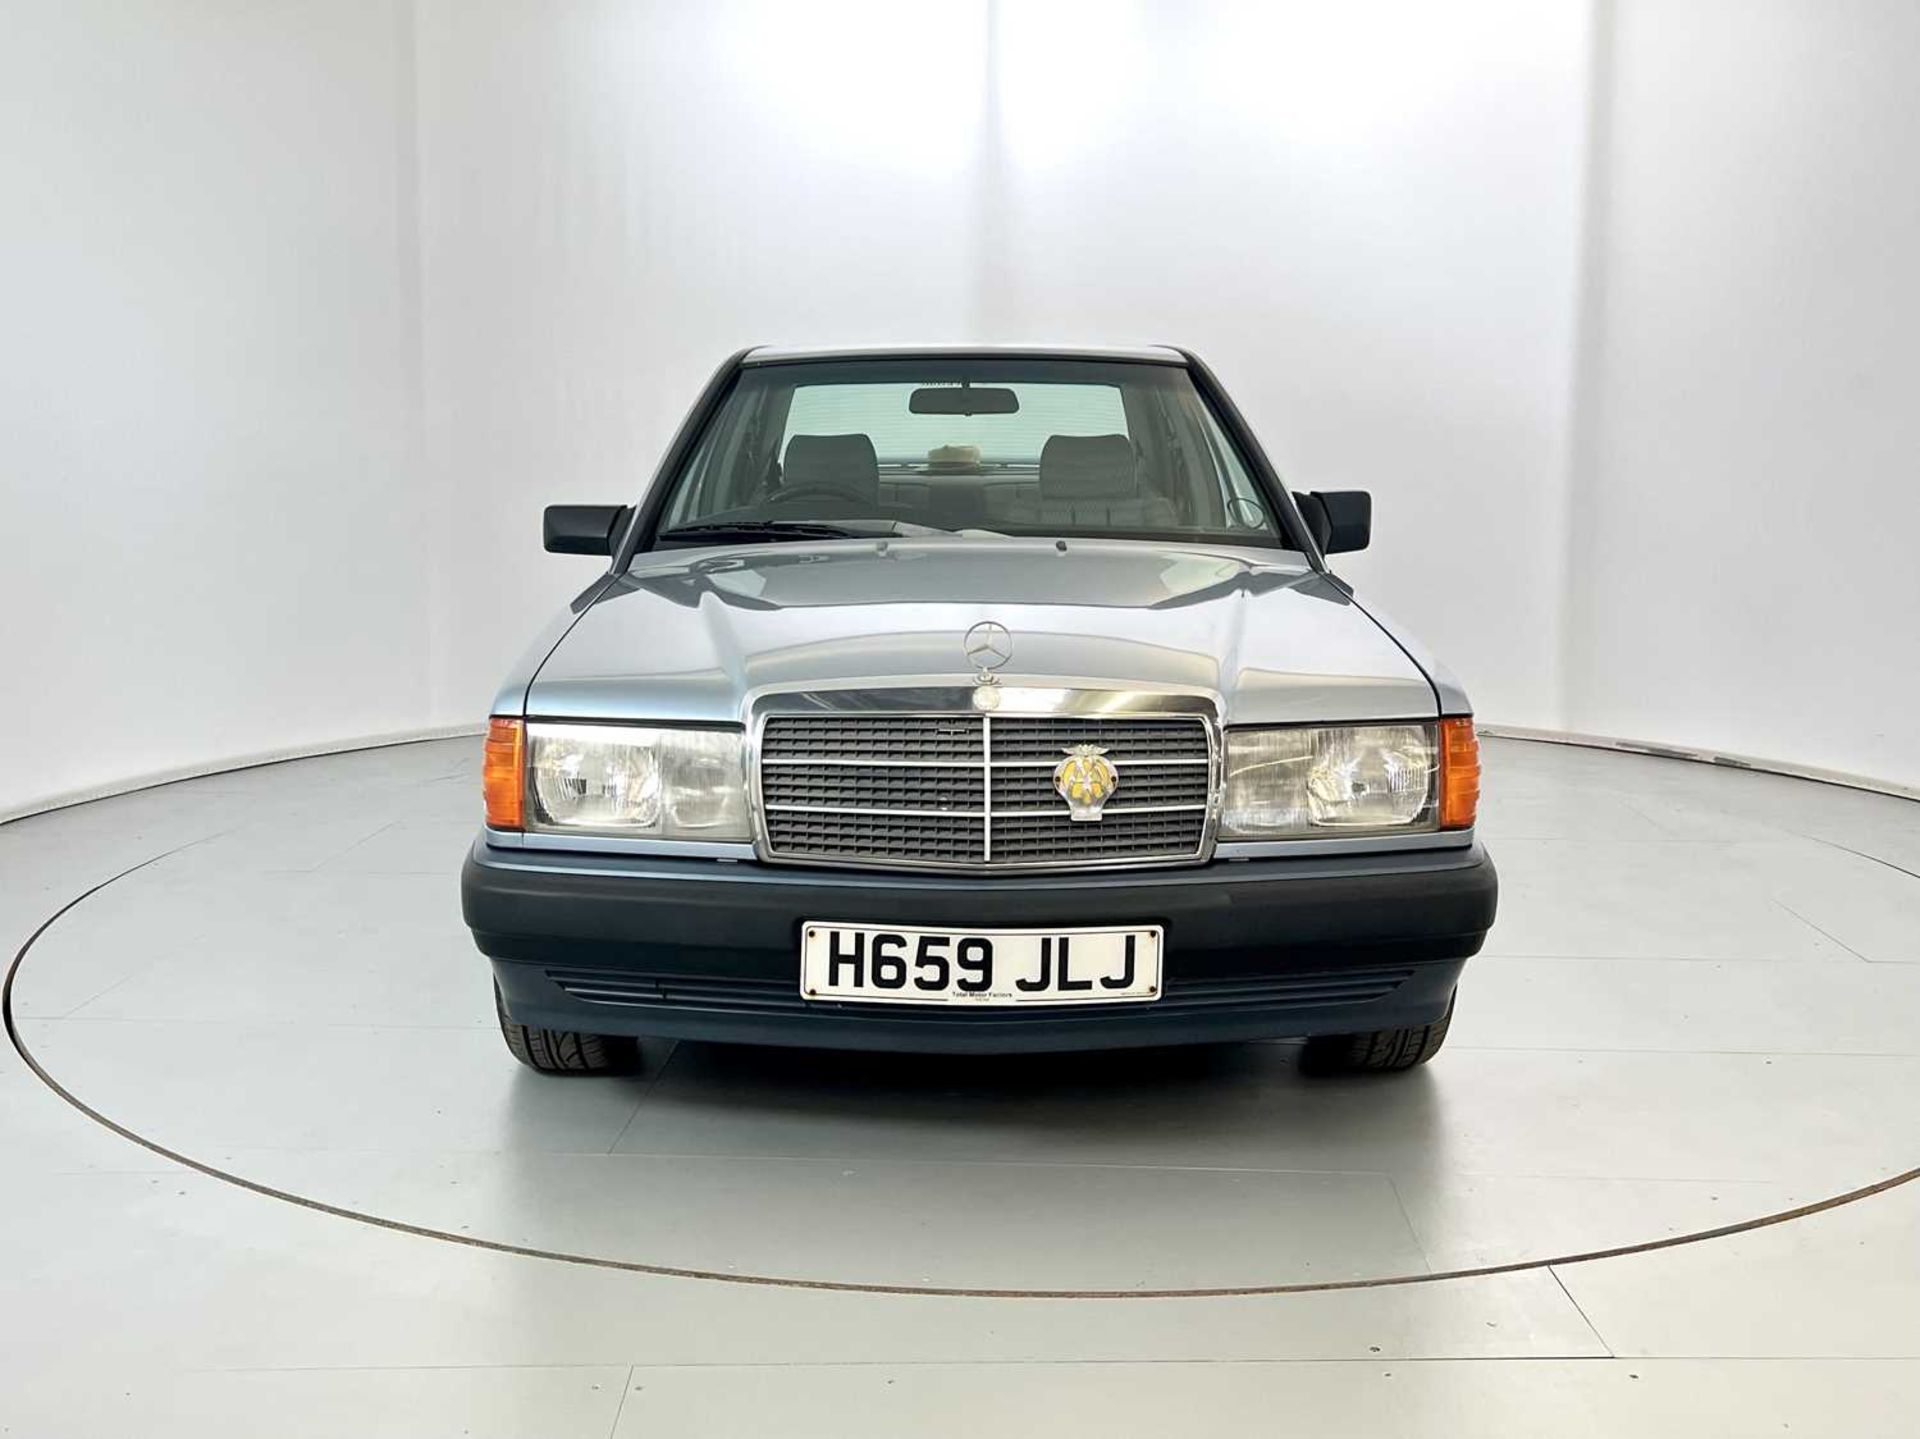 1990 Mercedes-Benz 190E - Image 2 of 32